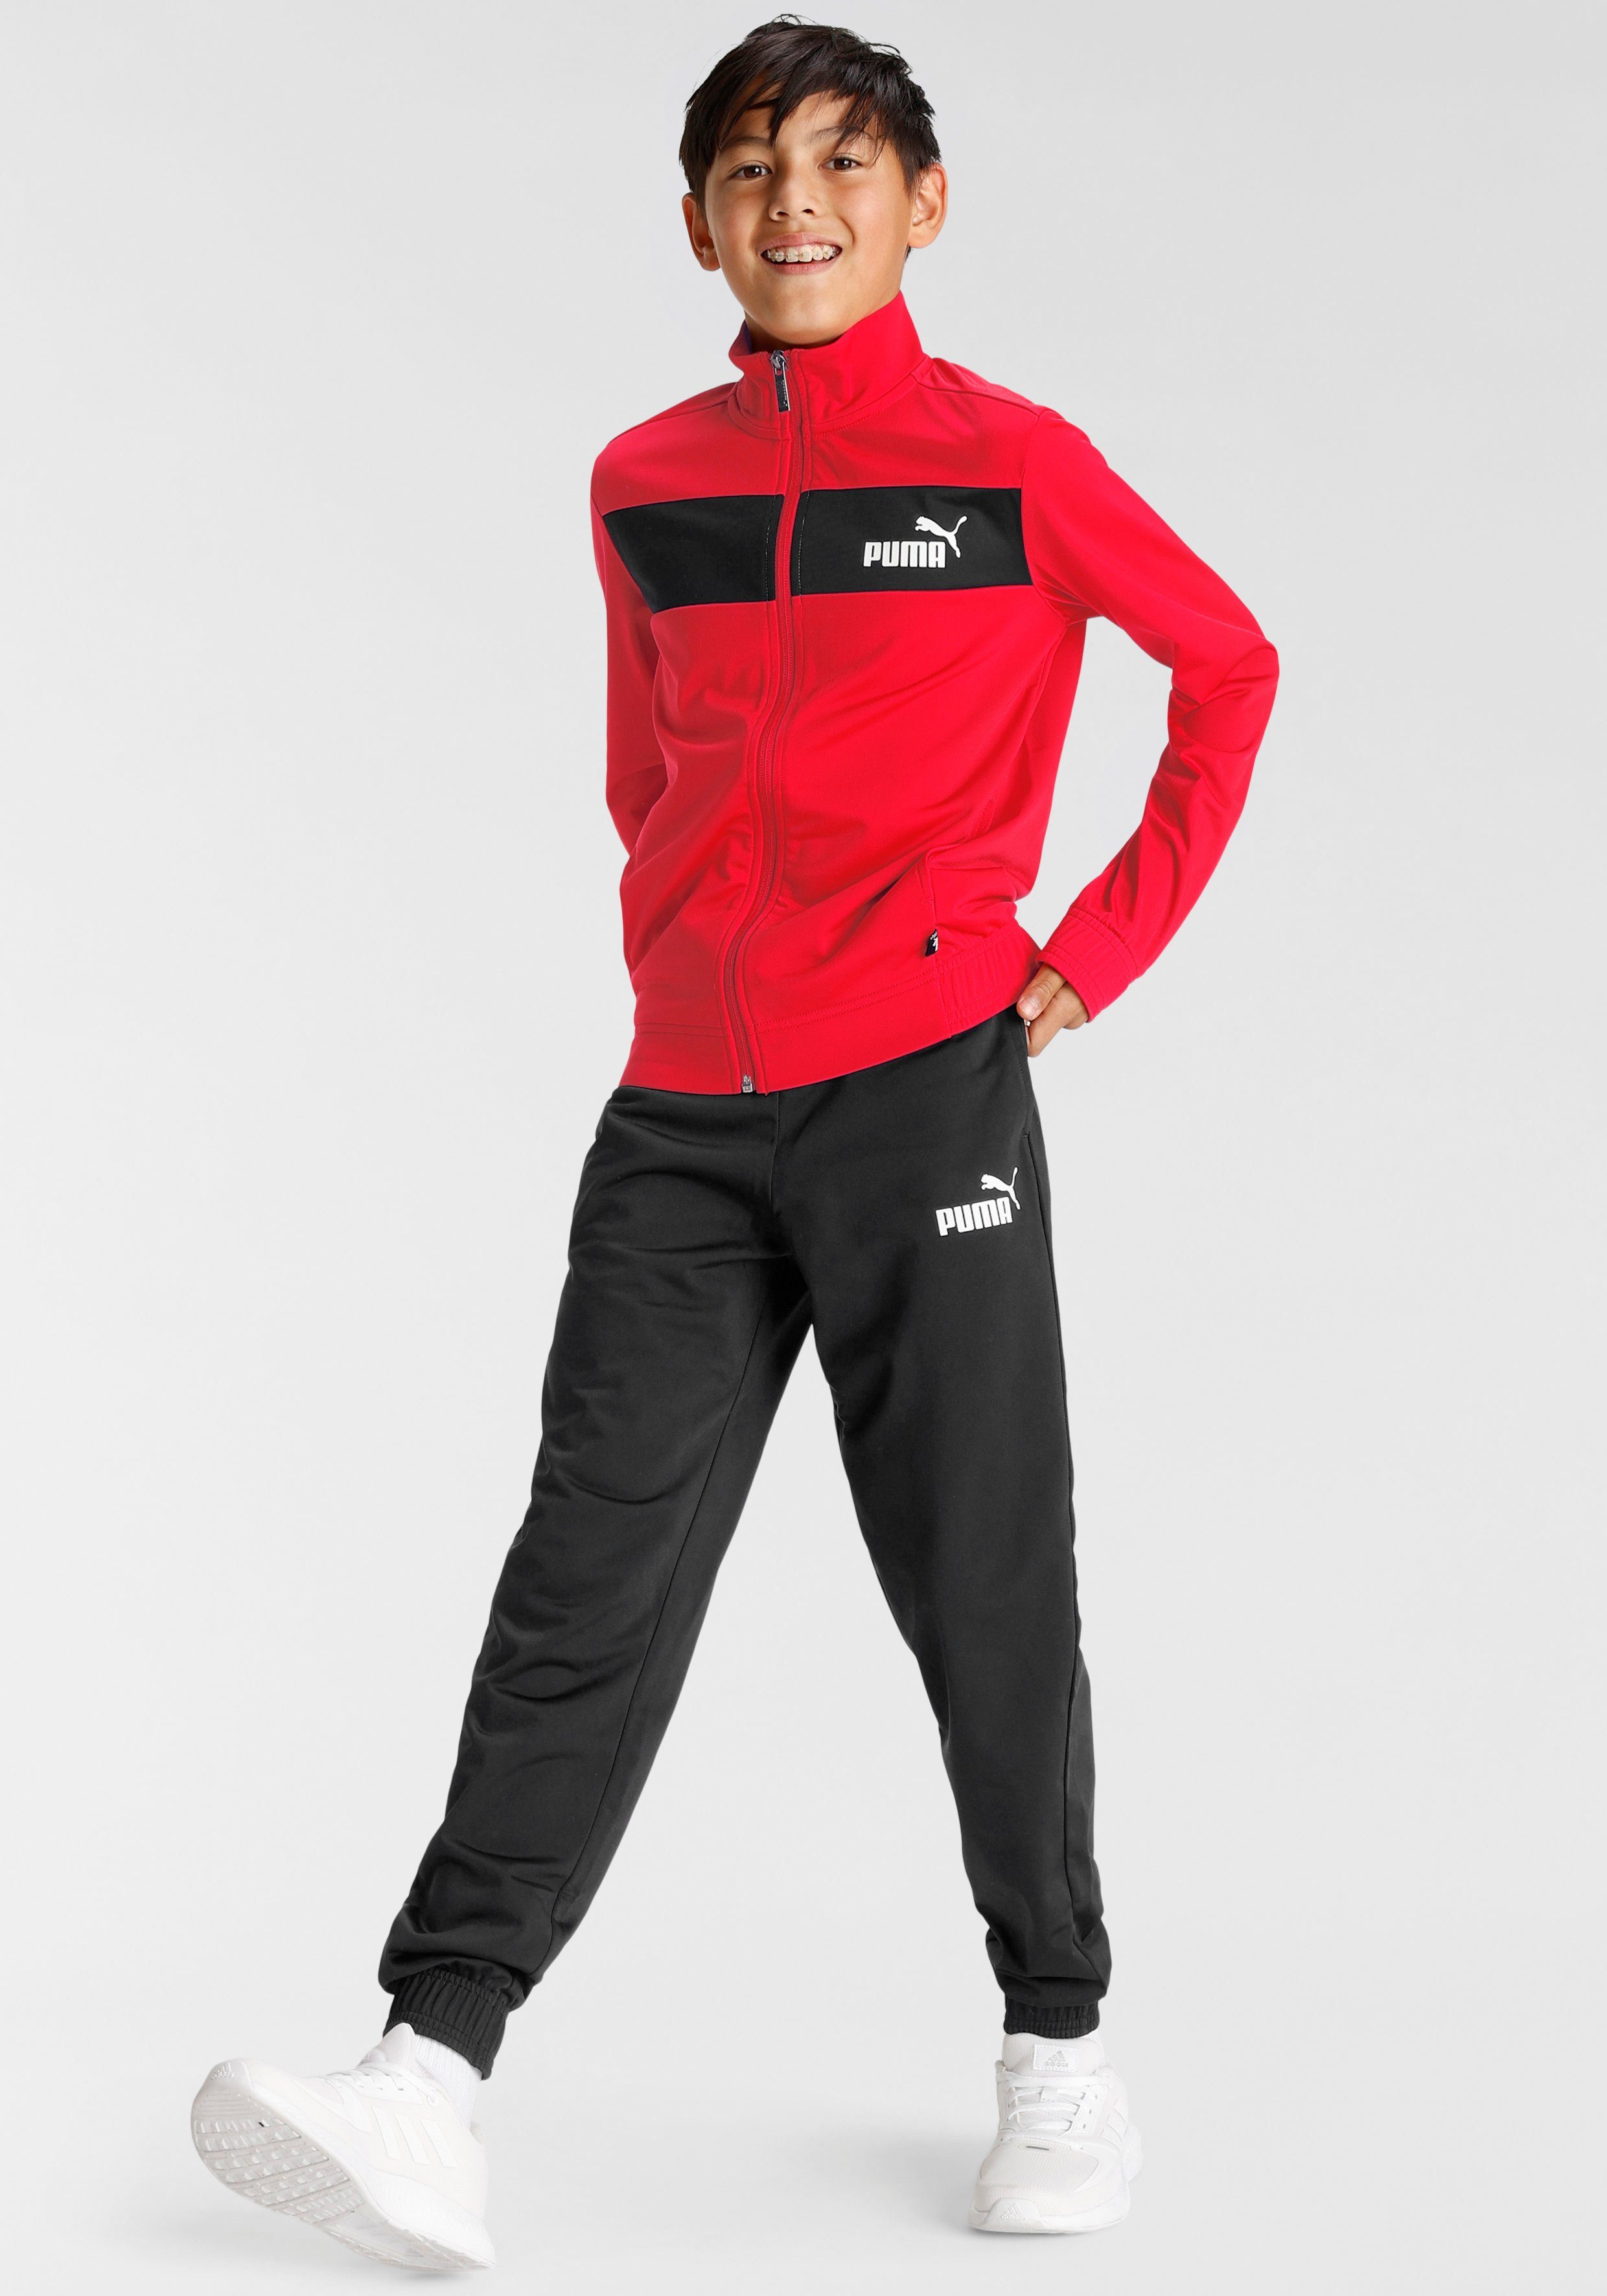 PUMA Trainingsanzug »Jugend-Trainingsanzug aus Polyester« online kaufen |  OTTO